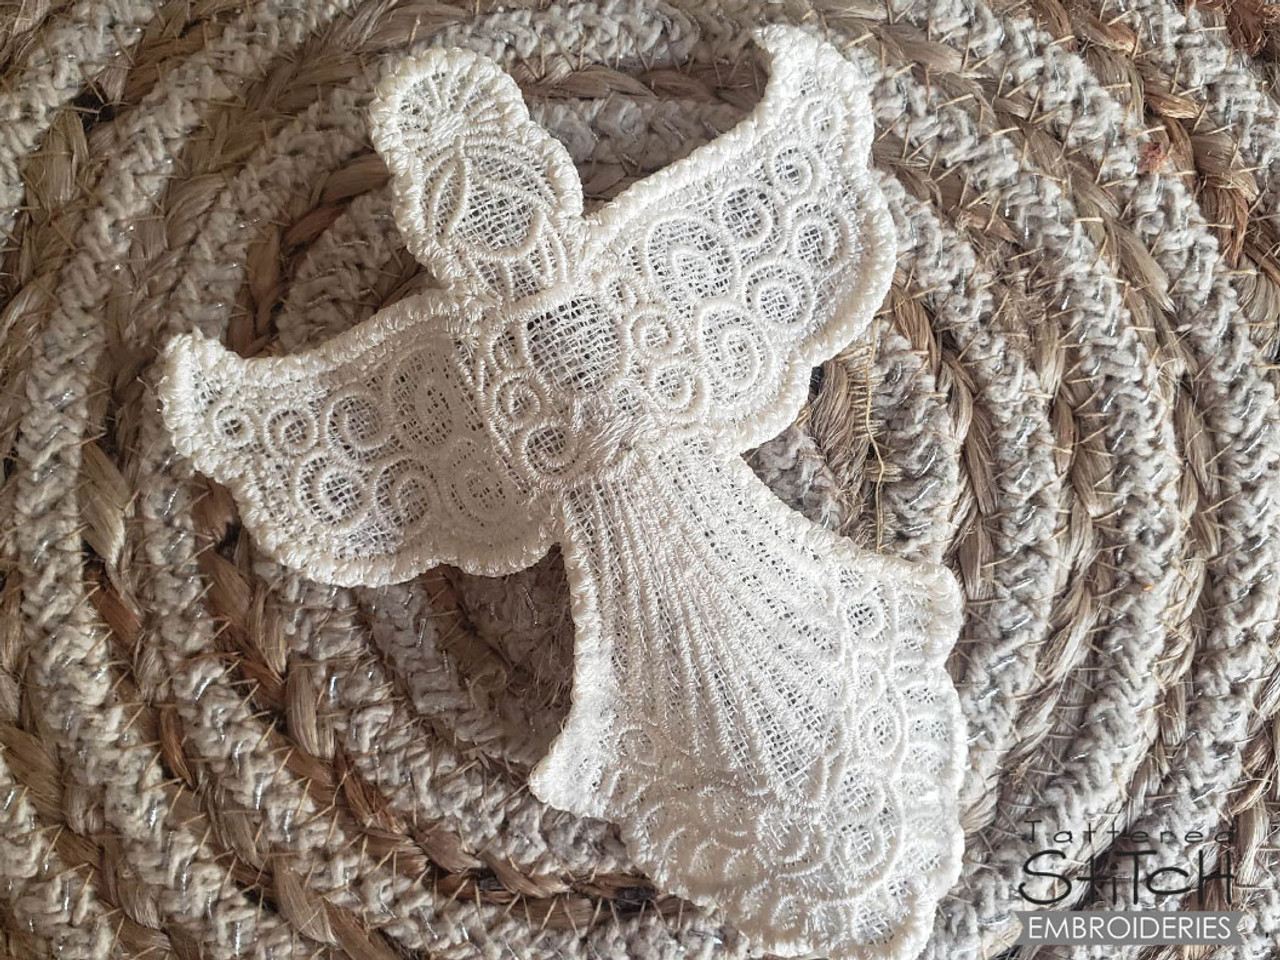 Knitting Machine Sitting Angel Pattern 